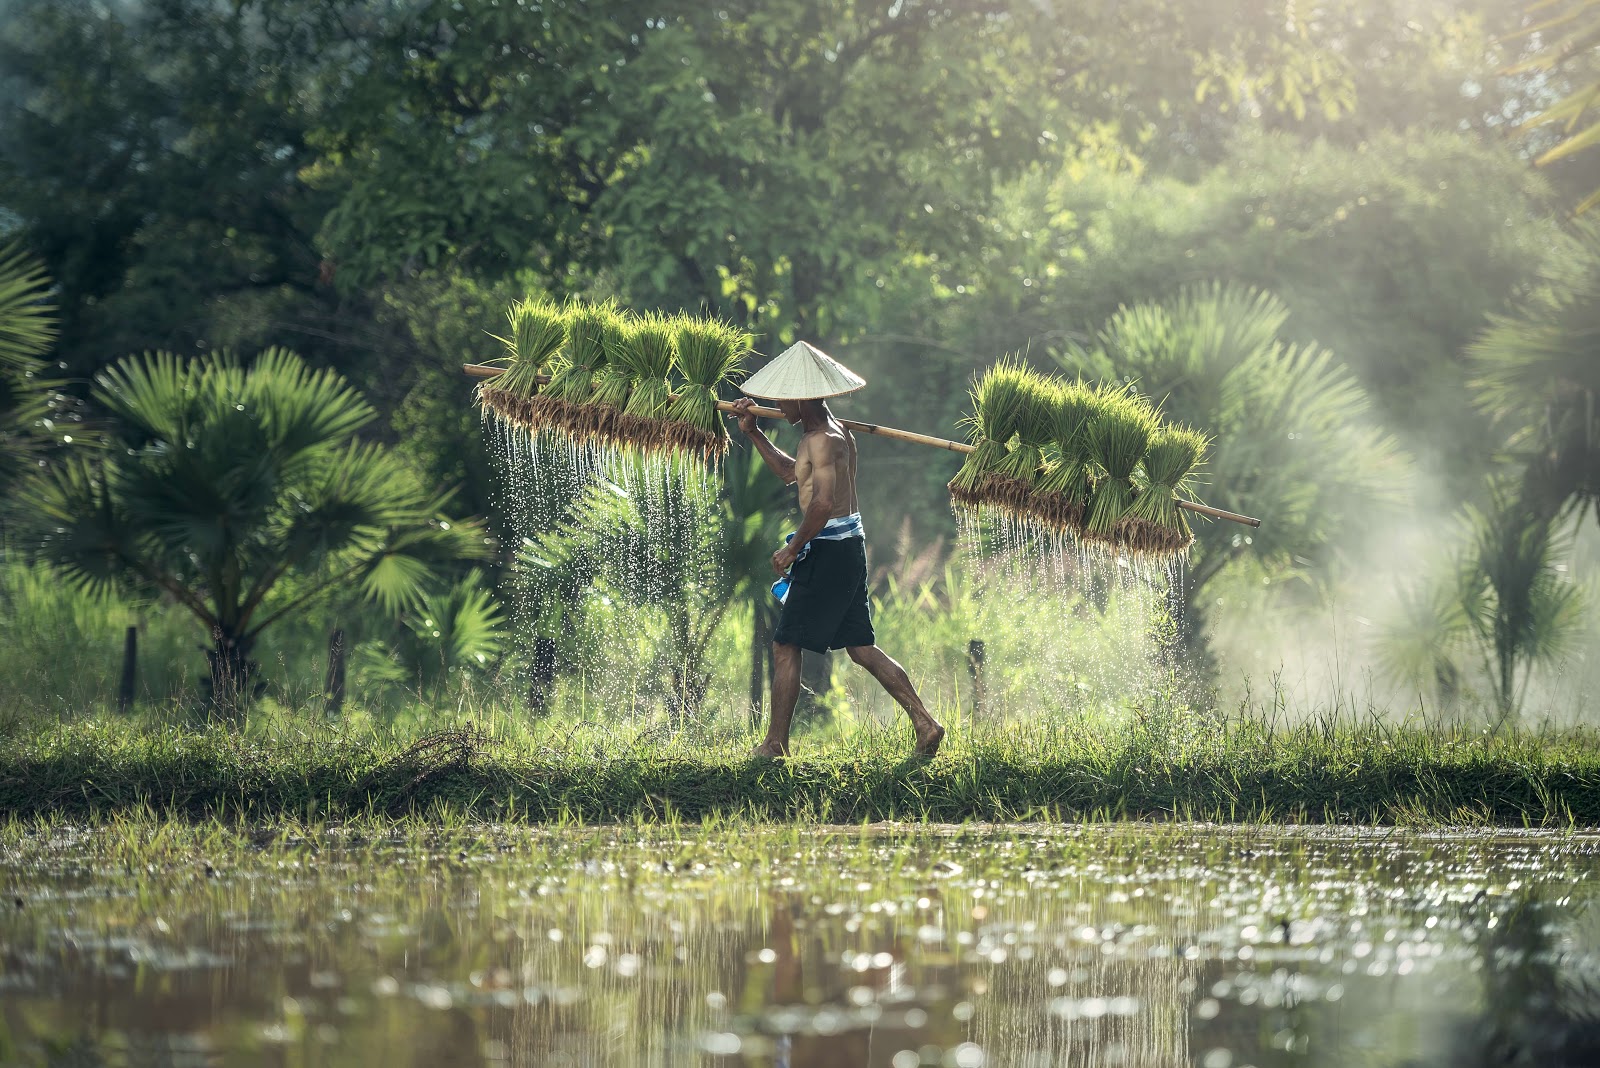 Un agricultor lleva arroz cosechado mientras camina junto a un soleadoarrozal